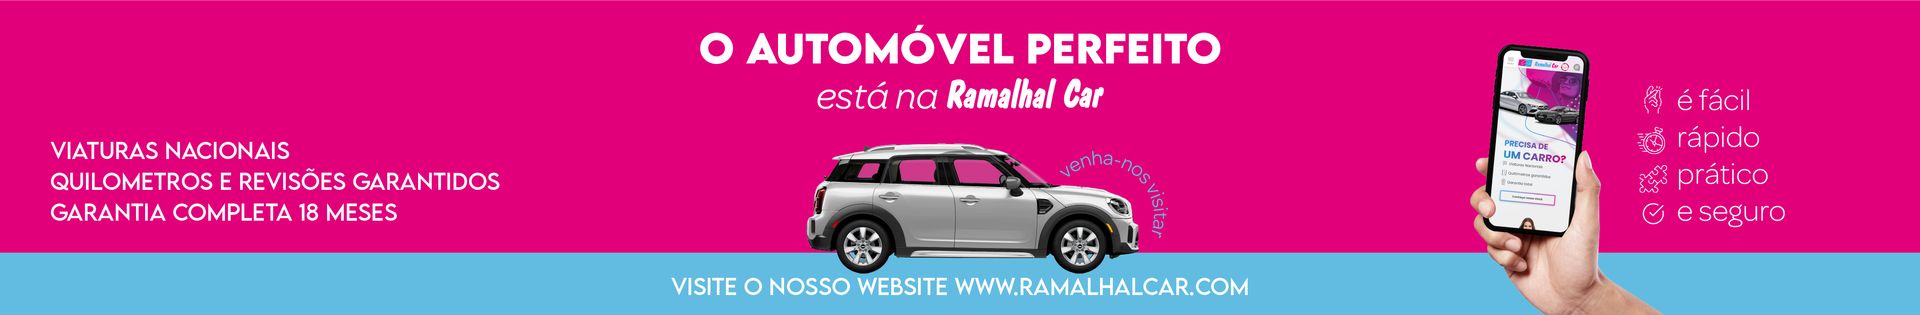 Ramalhal Car top banner